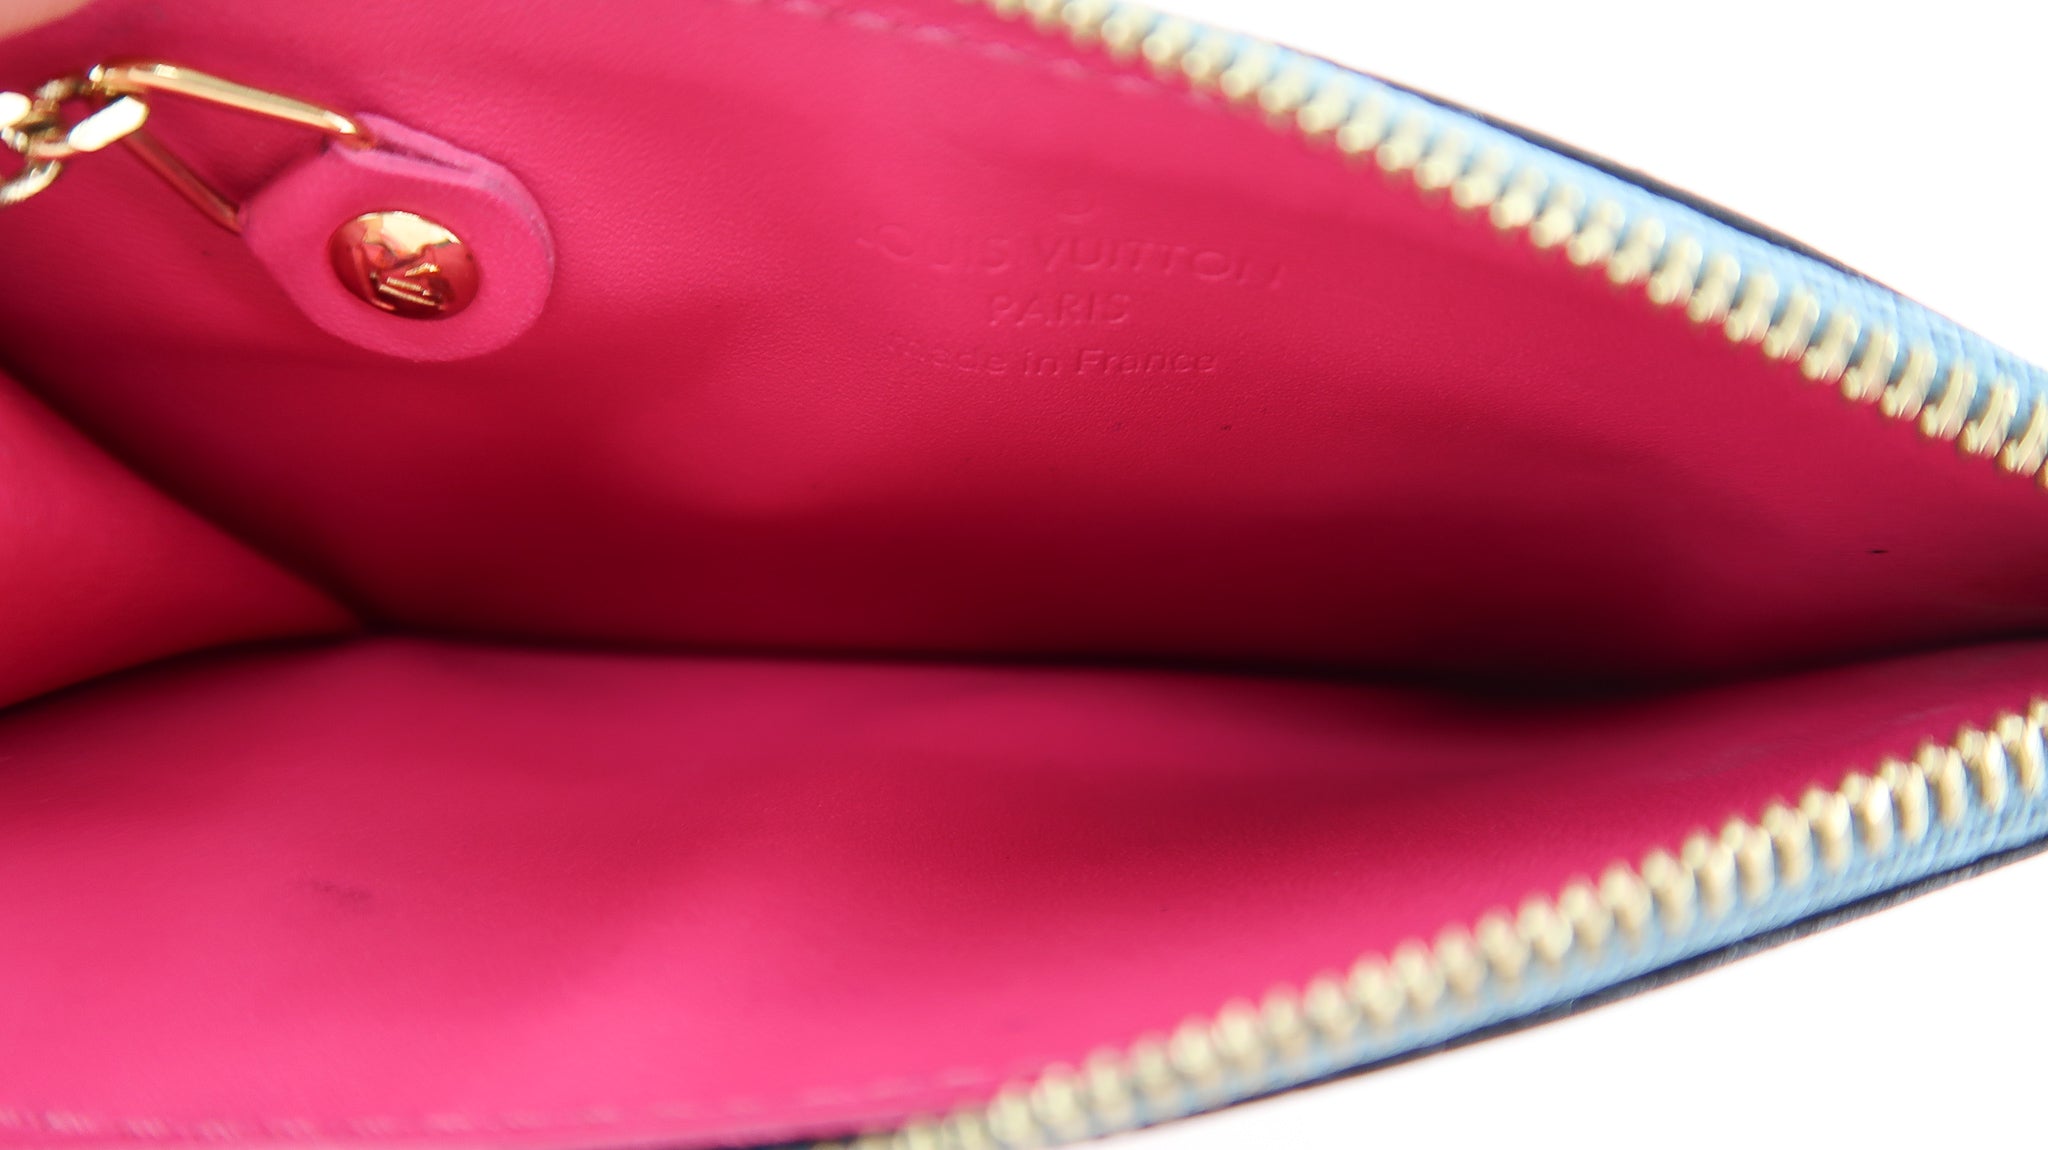 Louis Vuitton Metallic Vernis Card Holder Blue & Pink – DAC